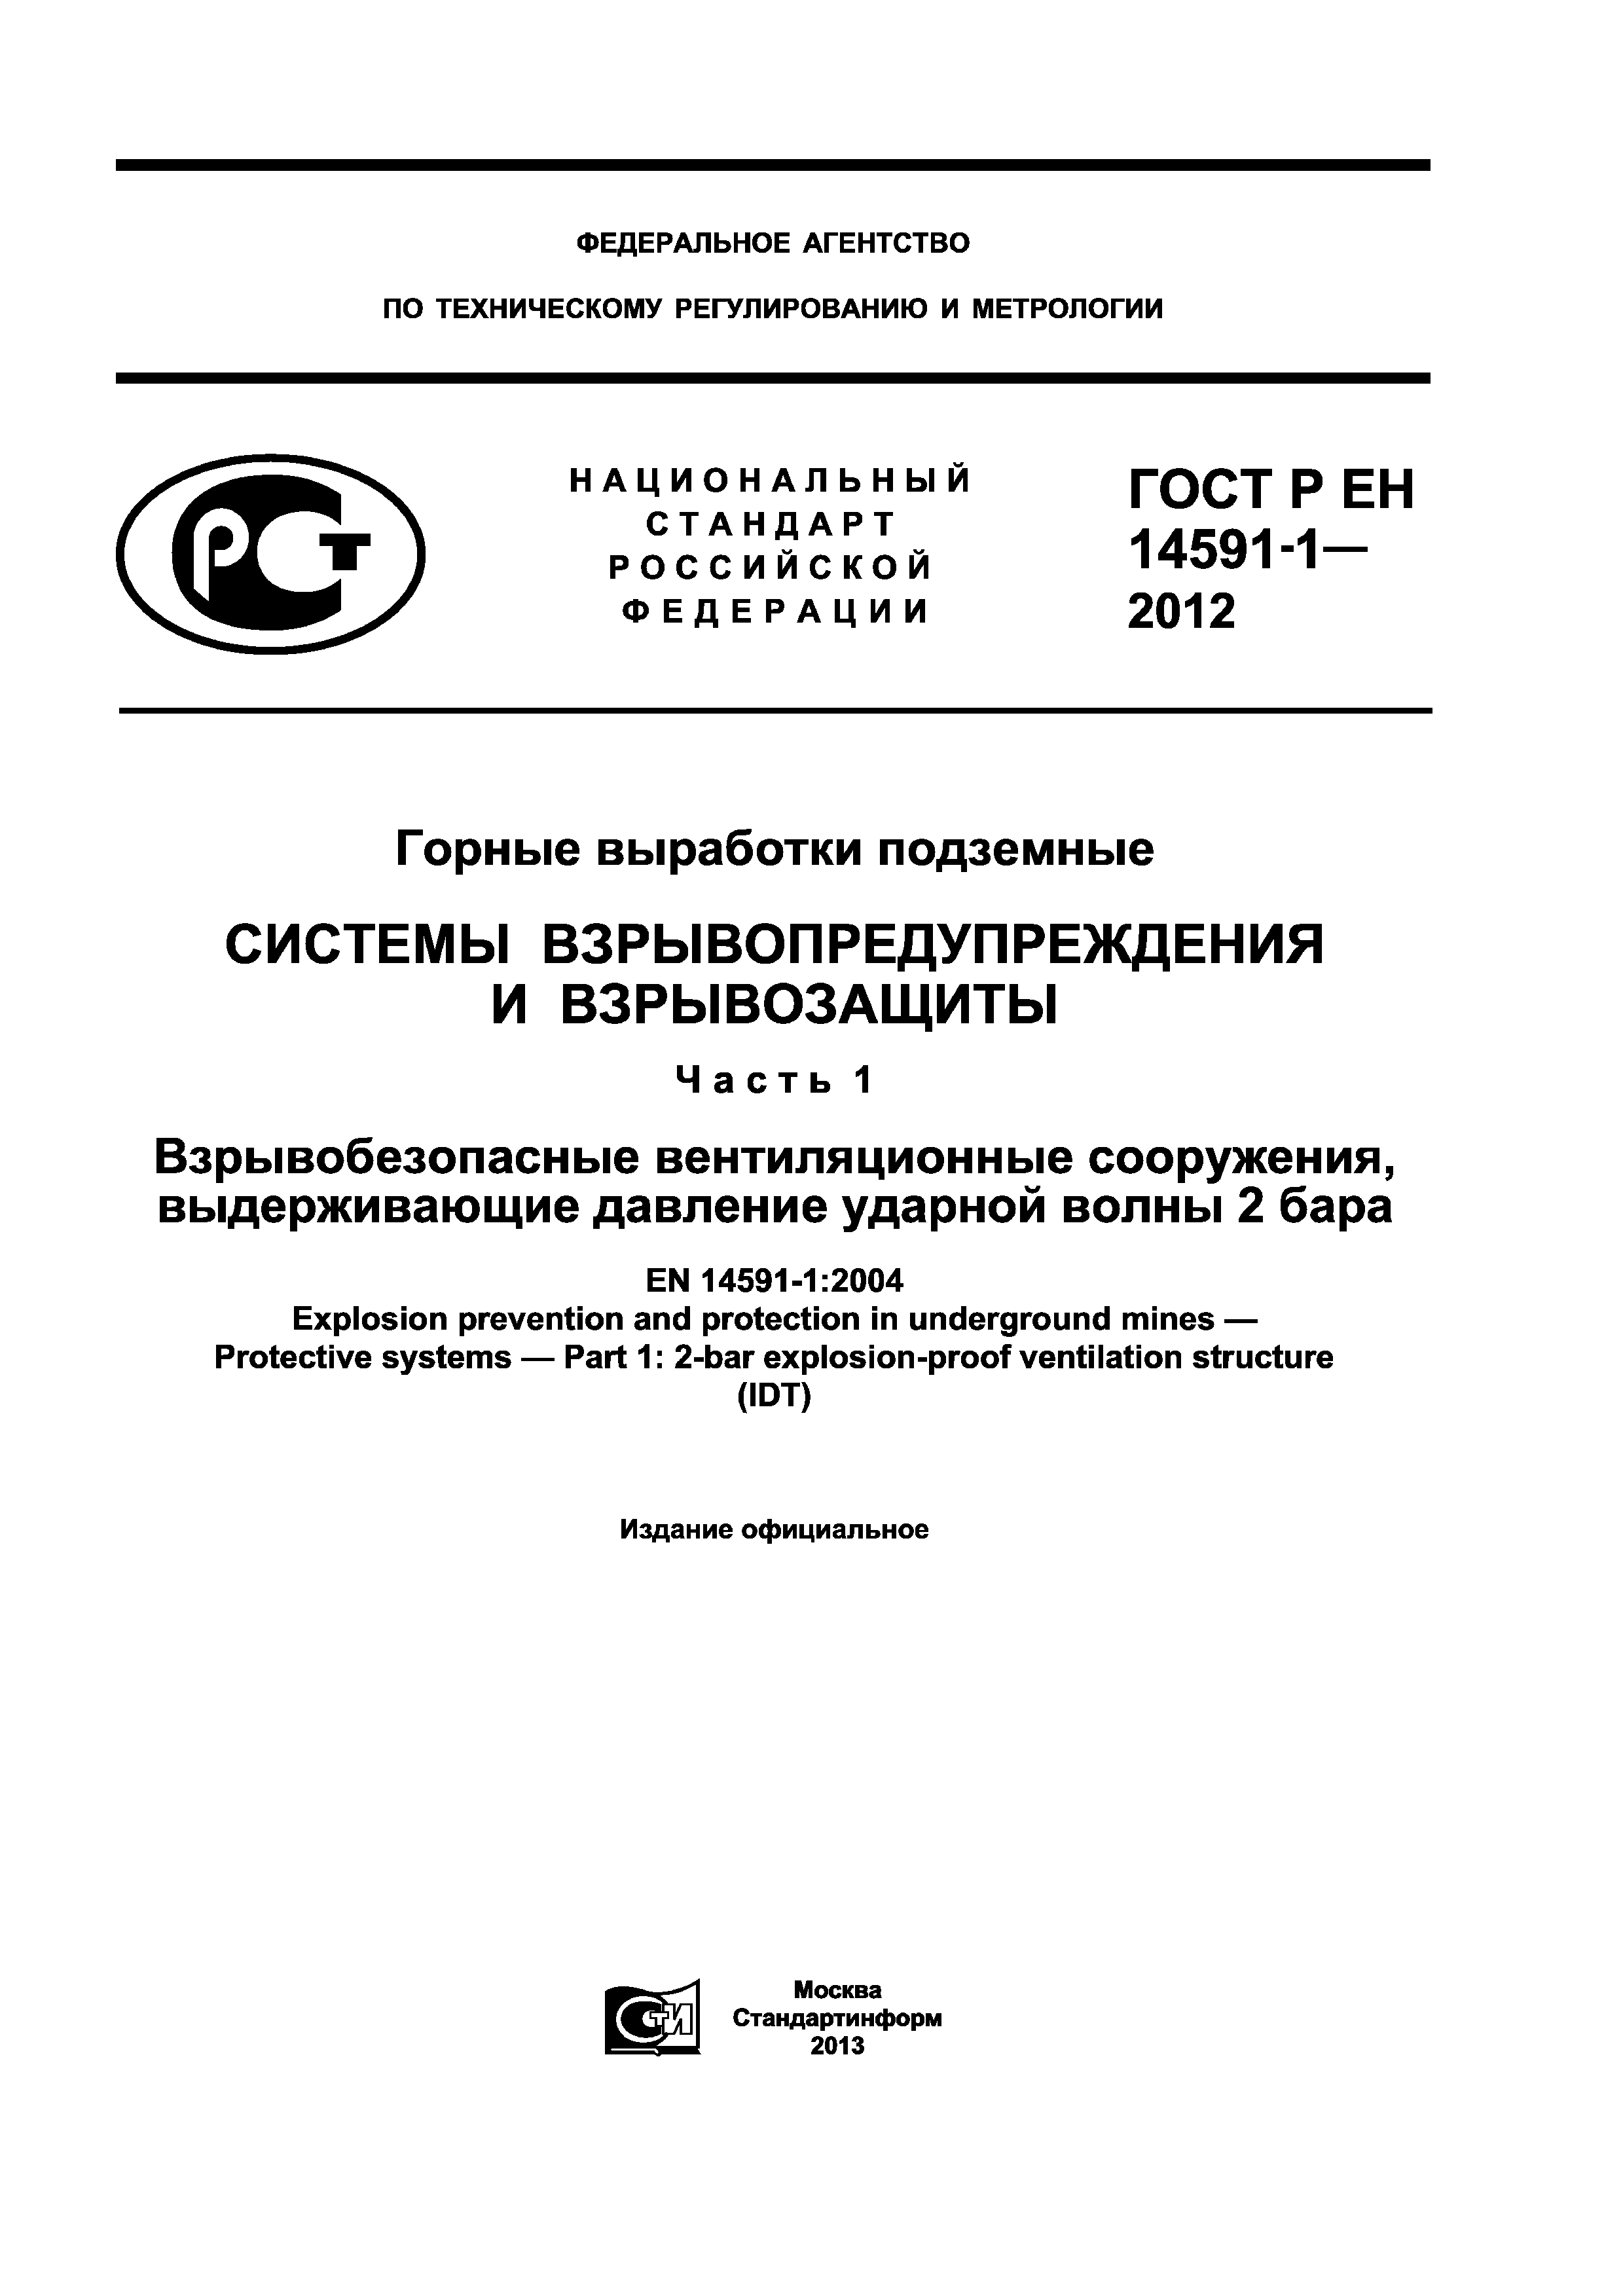 ГОСТ Р ЕН 14591-1-2012